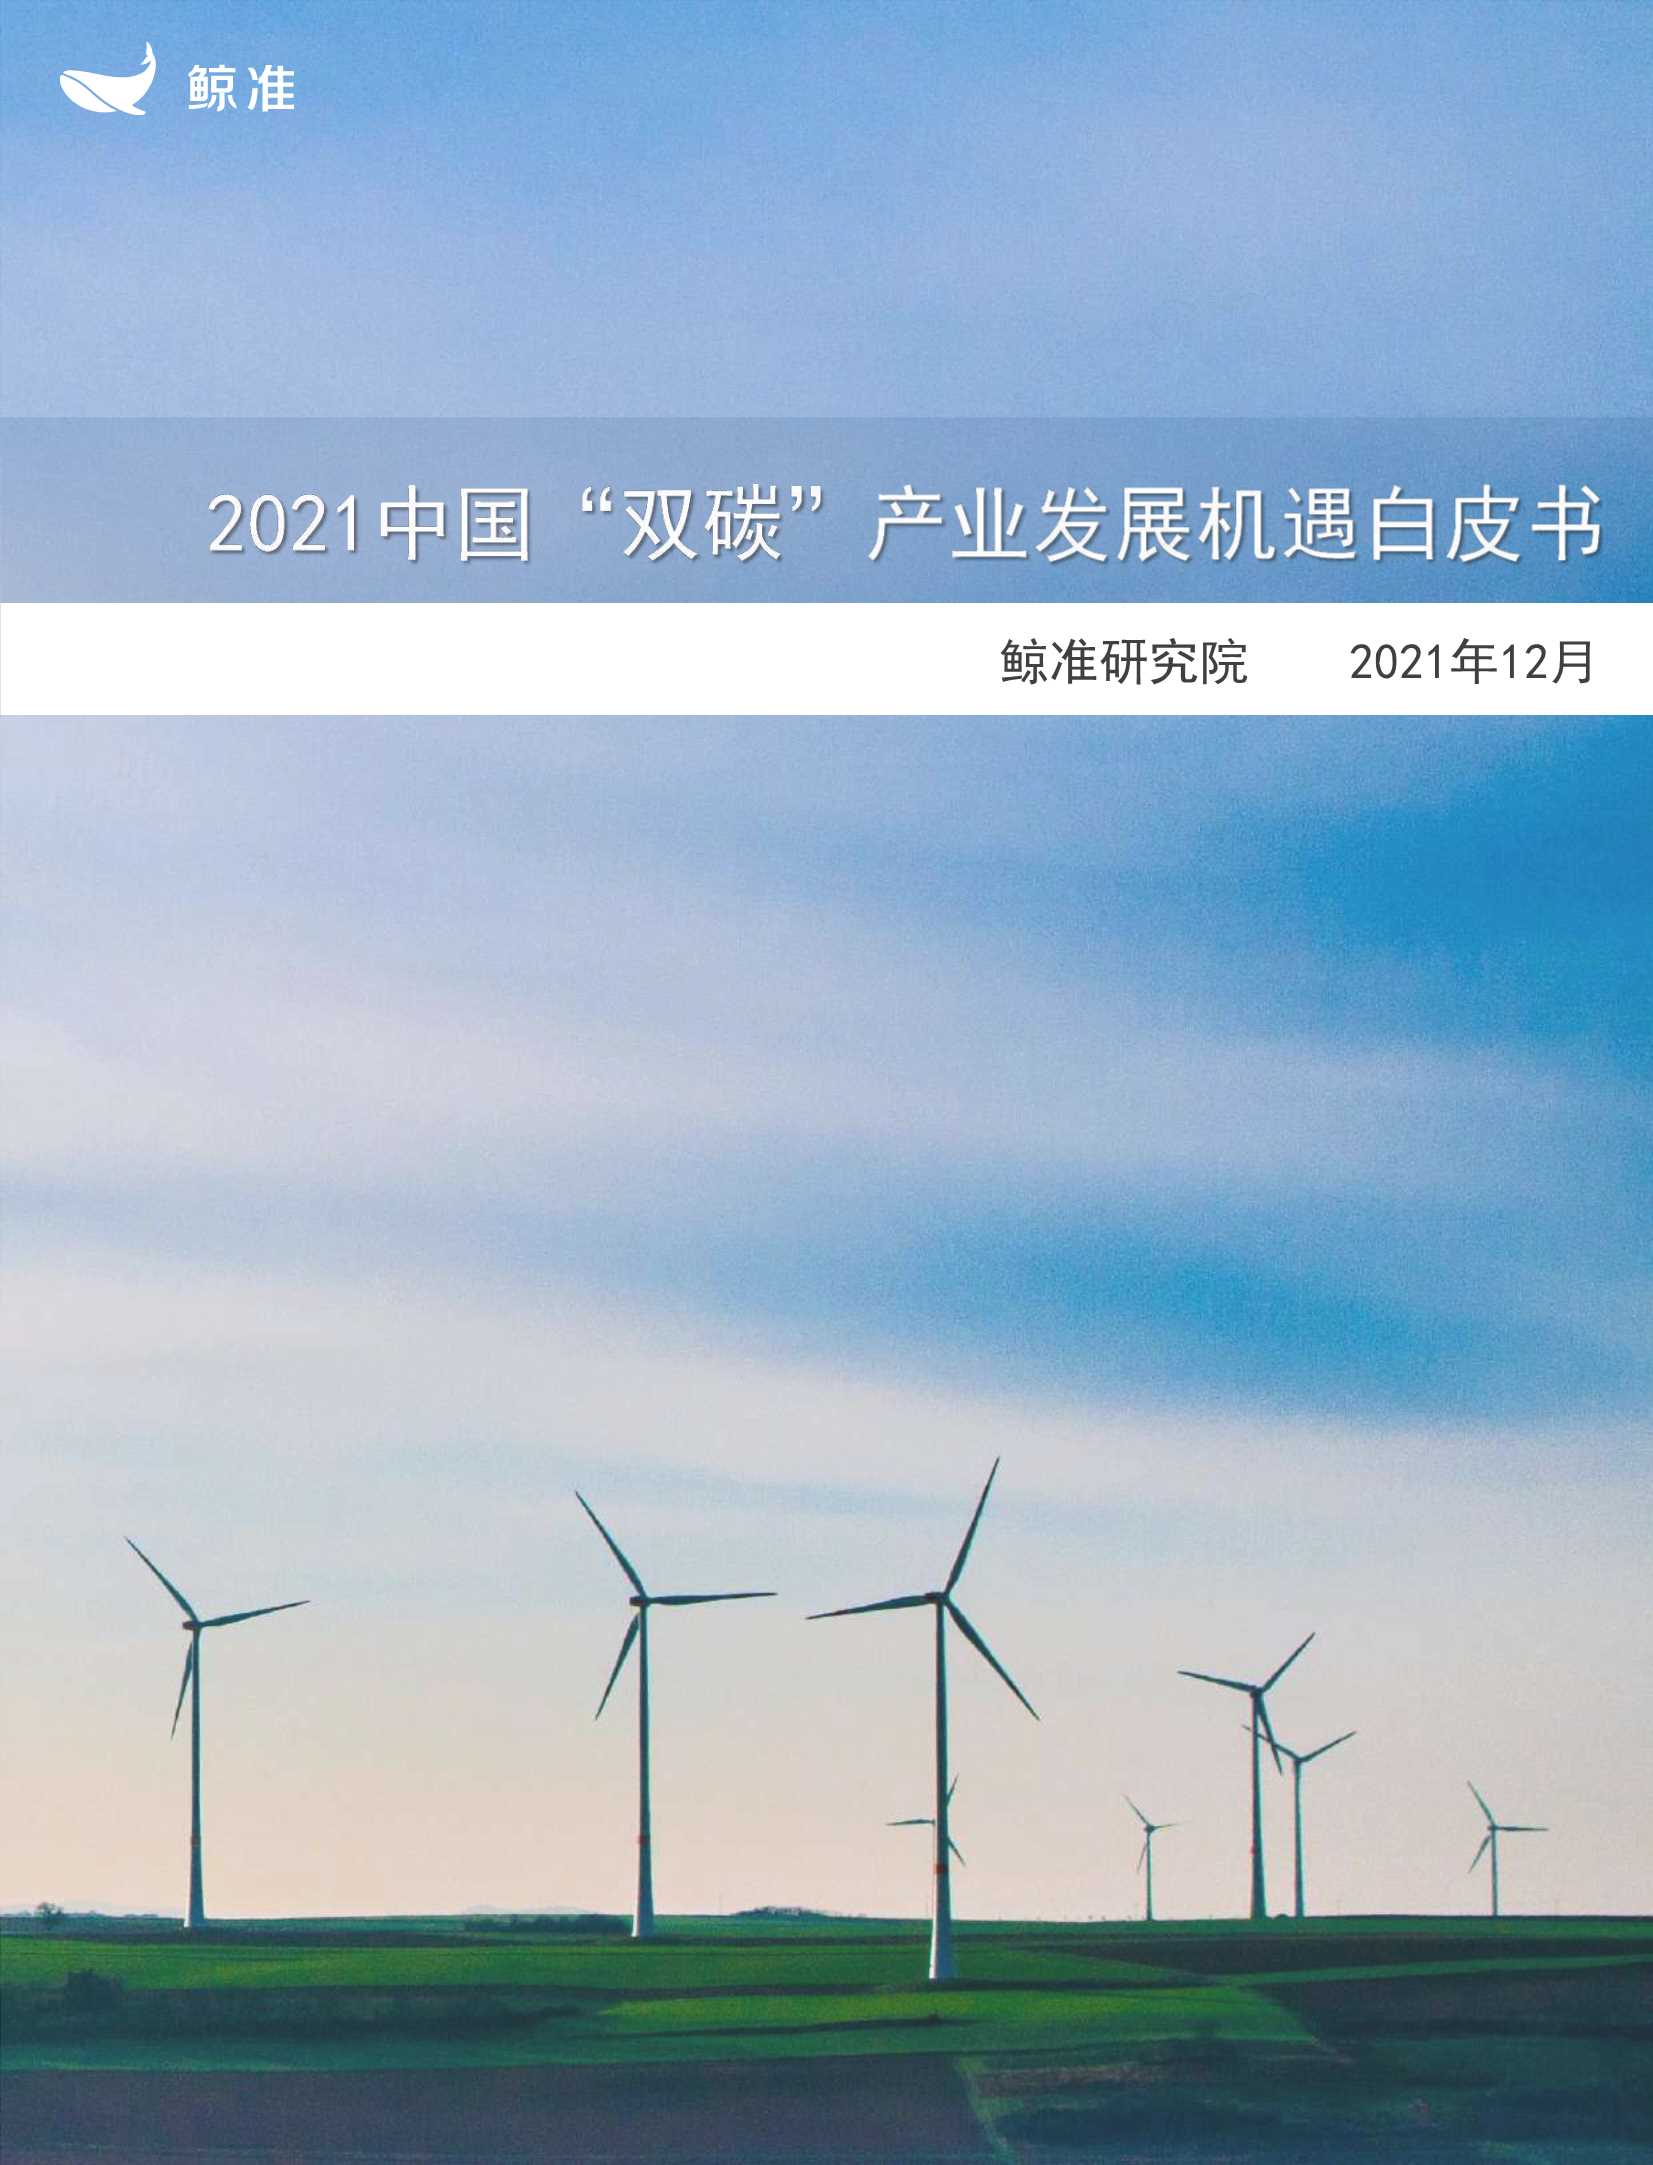 鲸准研究院-中国“双碳”产业发展机遇白皮书（2021年）-2022.03-36页